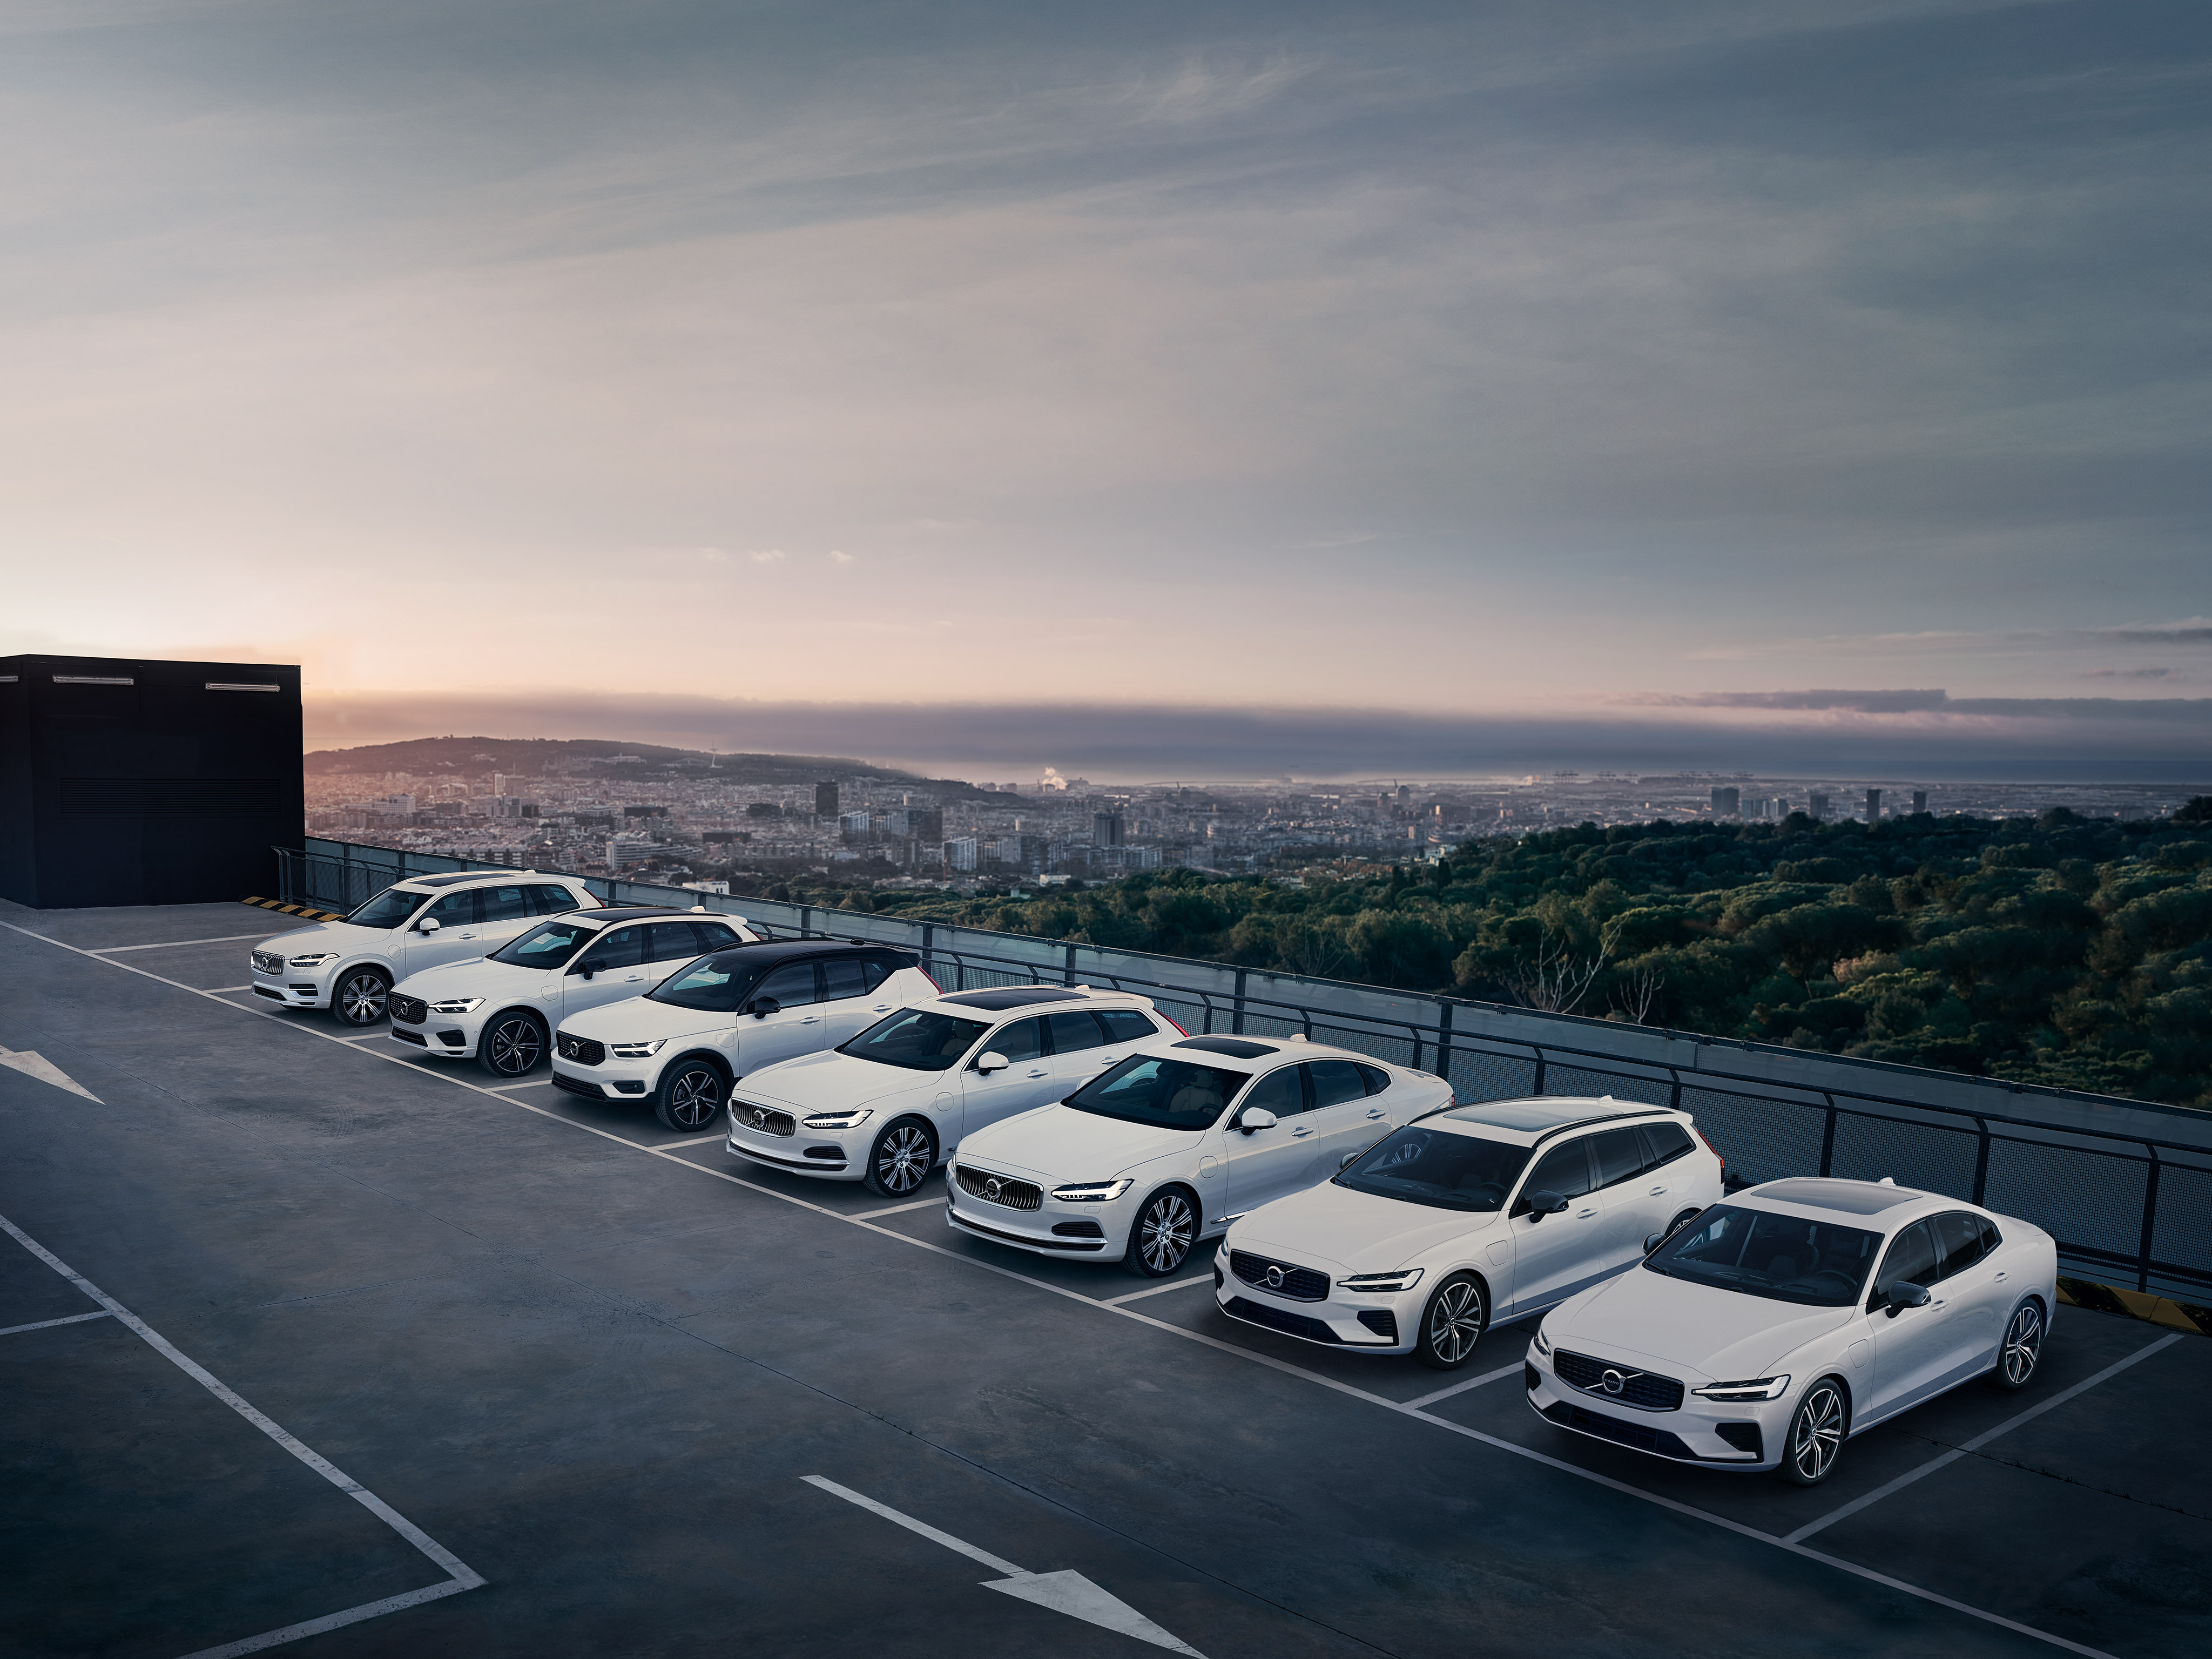  Réductions exceptionnelles sur l'ensemble de la gamme Volvo